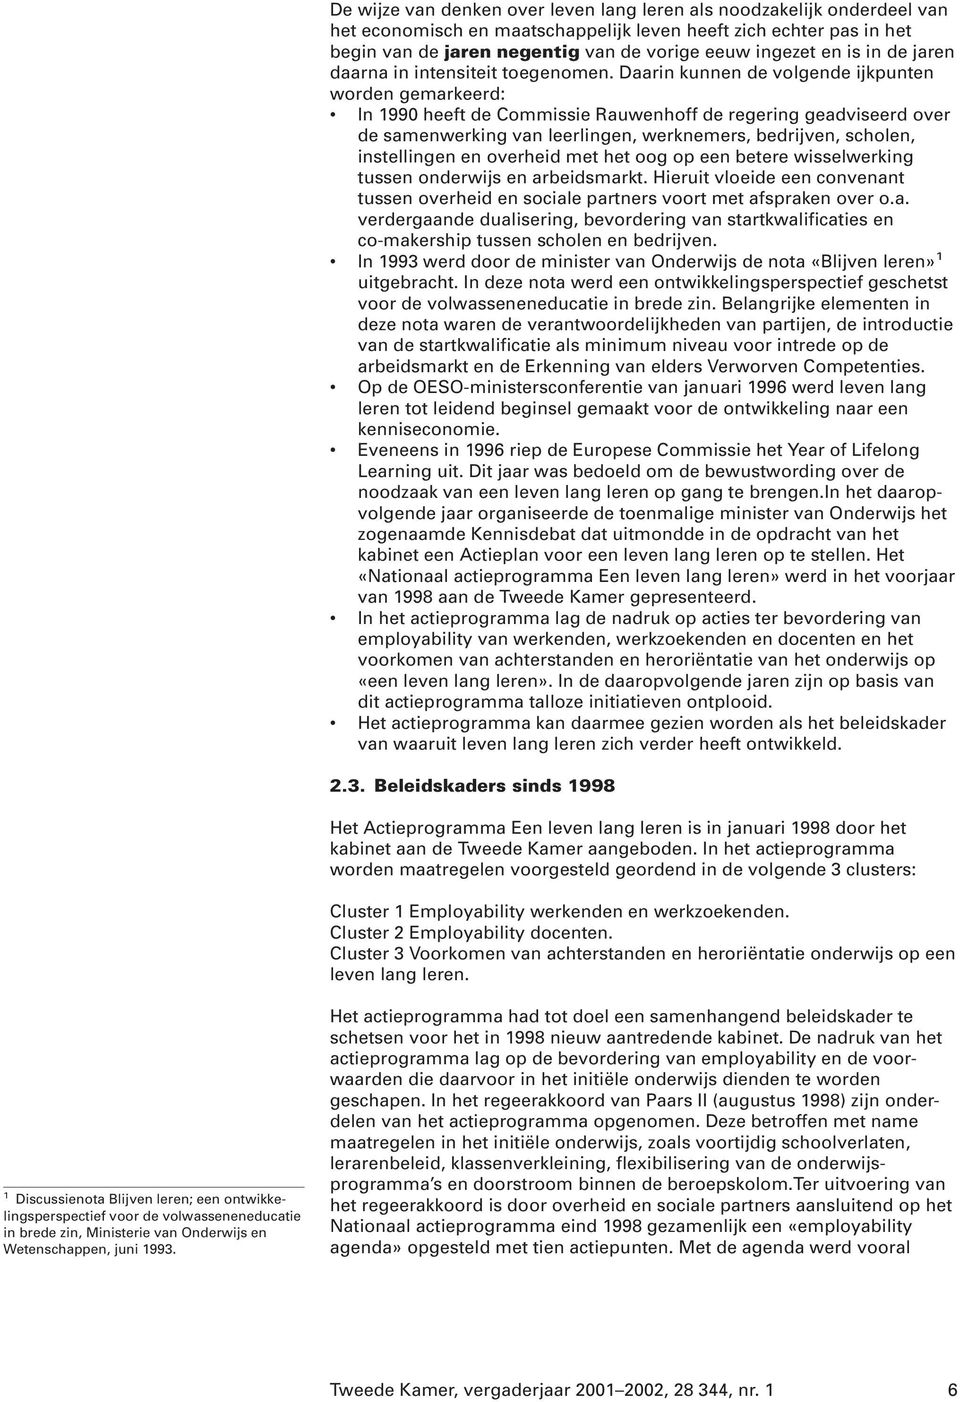 Daarin kunnen de volgende ijkpunten worden gemarkeerd: In 1990 heeft de Commissie Rauwenhoff de regering geadviseerd over de samenwerking van leerlingen, werknemers, bedrijven, scholen, instellingen